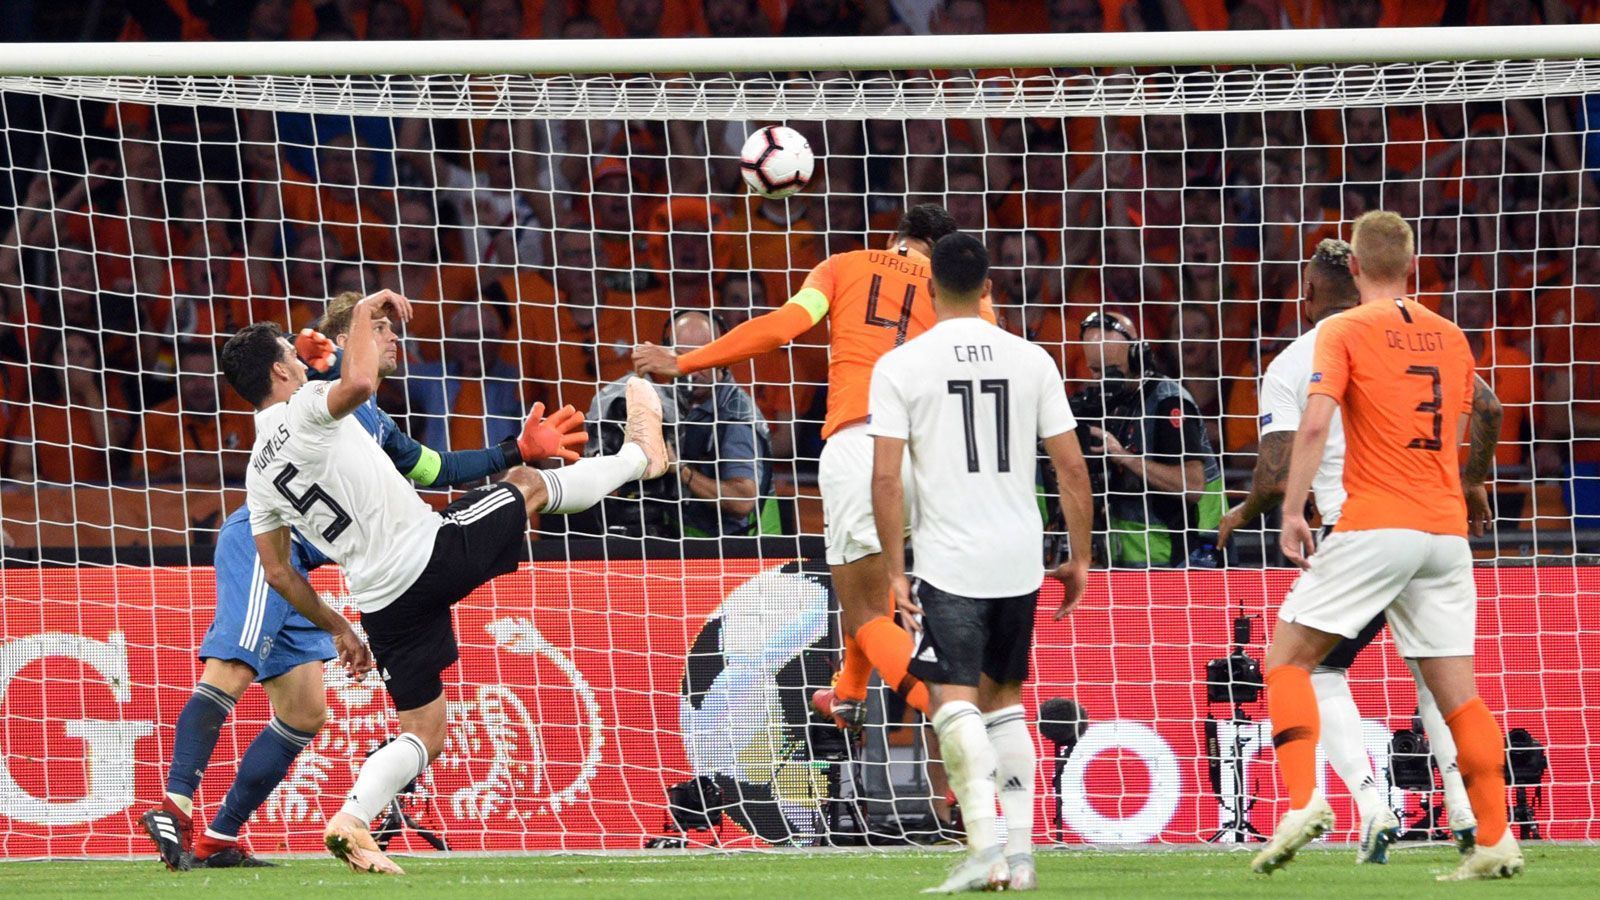 
                <strong>Nations League: Niederlande vs. Deutschland</strong><br>
                Der zweite Auftritt der deutschen Nationalmannschaft in der Nations League wurde zur Enttäuschung. Gegen eine junge niederländischen Mannschaft erspielte sich das Team von Joachim Löw kaum hochkarätige Chancen, ließ dafür umso mehr zu und verlor 0:3. Ein paar wenige Lichtblicke gab es trotzdem.
              